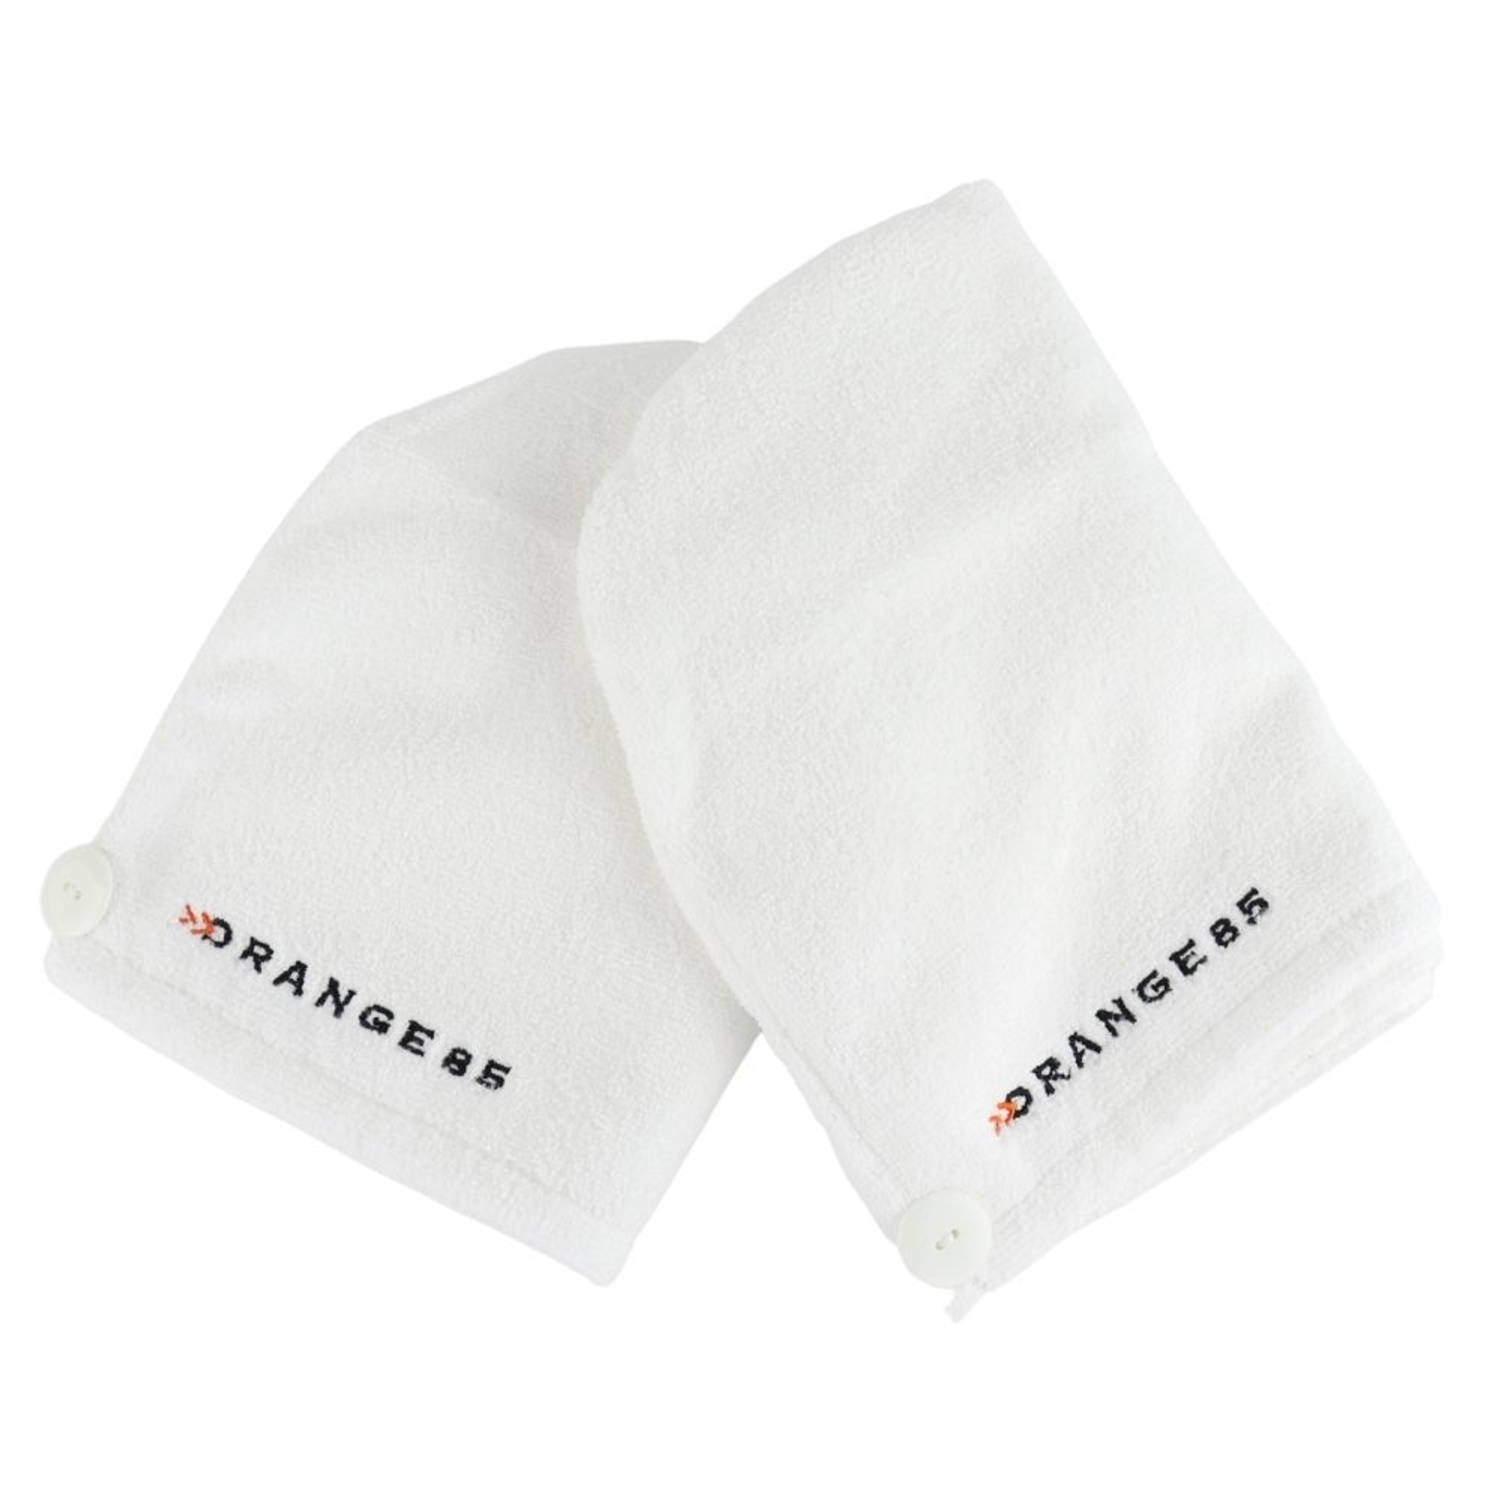 Orange85 - Handdoek - Haarhanddoek - Haar - Wit 2 stuks | Blokker